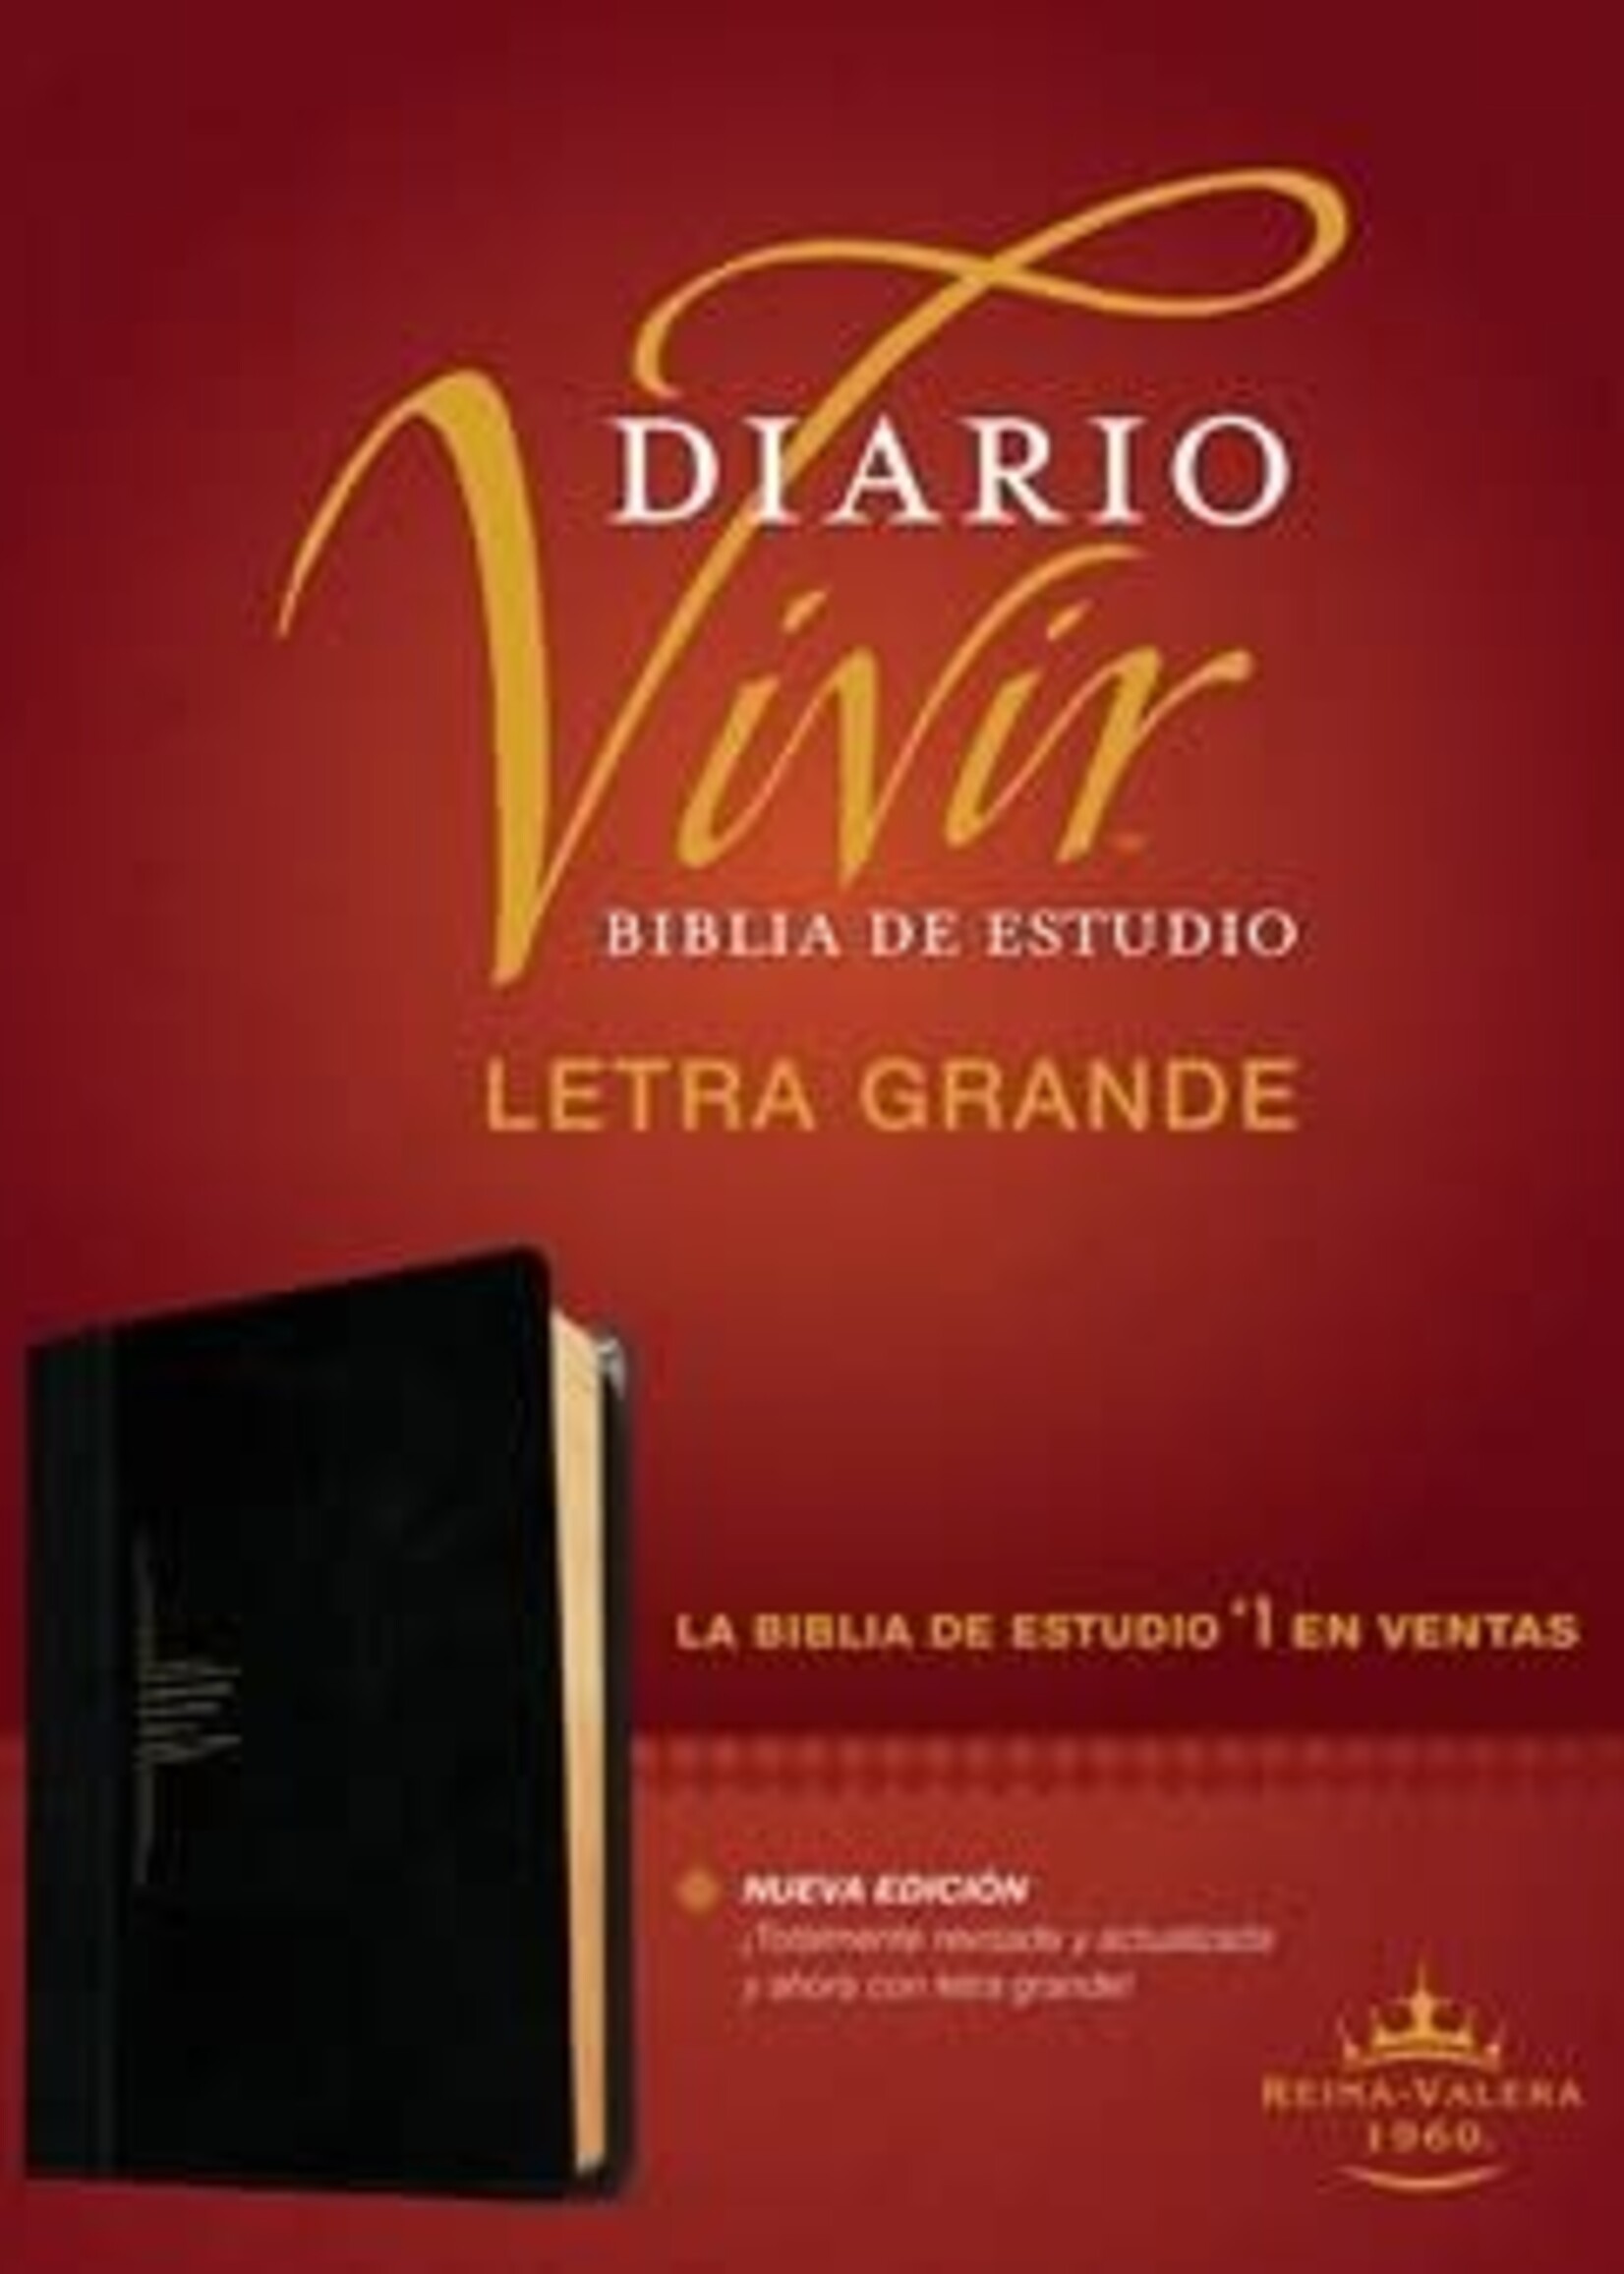 TYNDALE ESPANOL BIBLIA DE ESTUDIO DIARIO VIVIR RVR60 CON INDICADORES